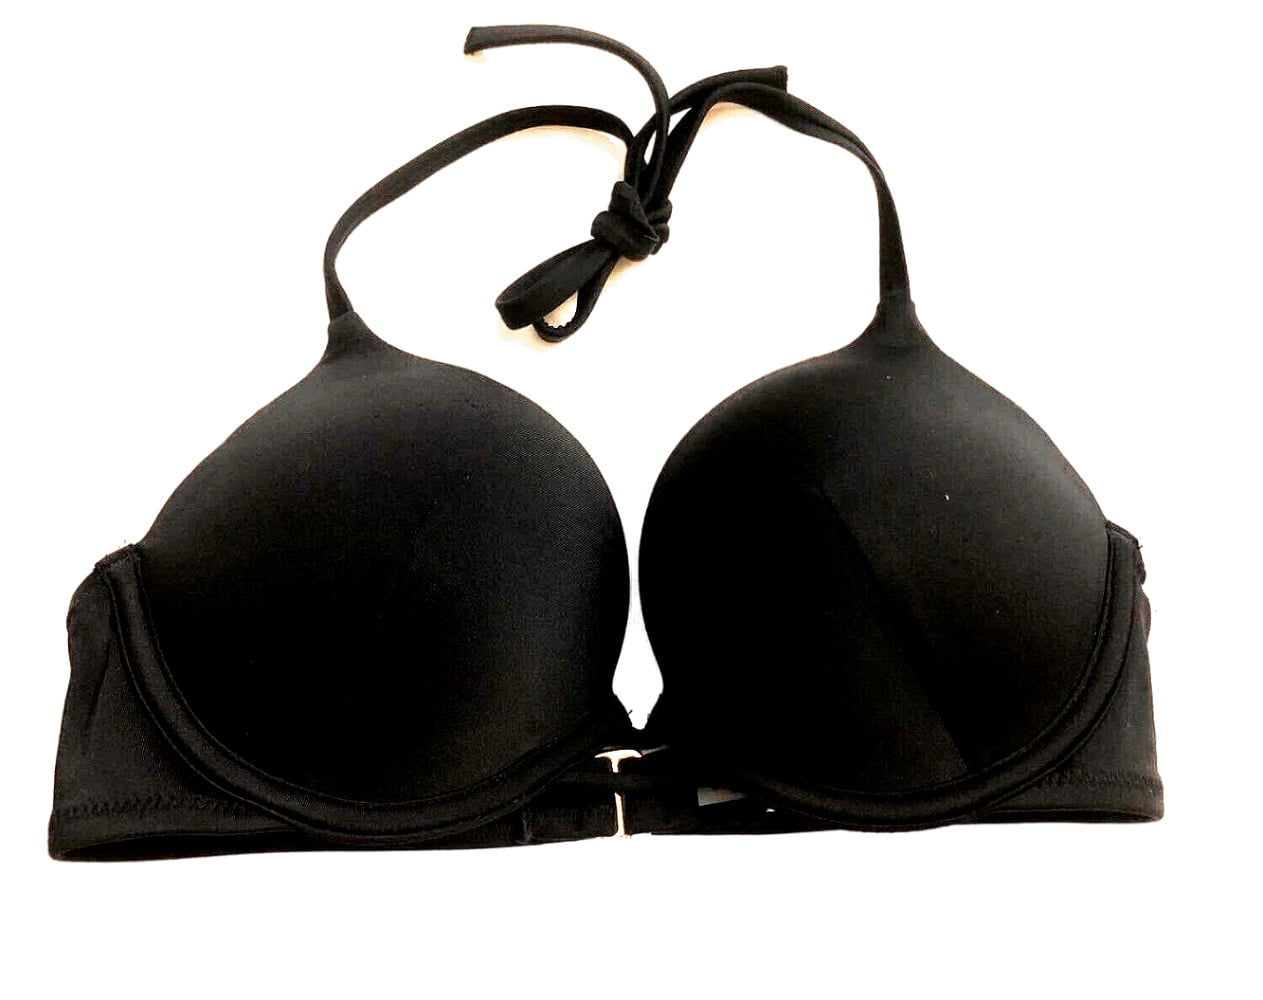 Victoria's Secret Bombshell Add-2-Cups Push-Up Swim Bikini Top Black Cups  Size 32B NWT 